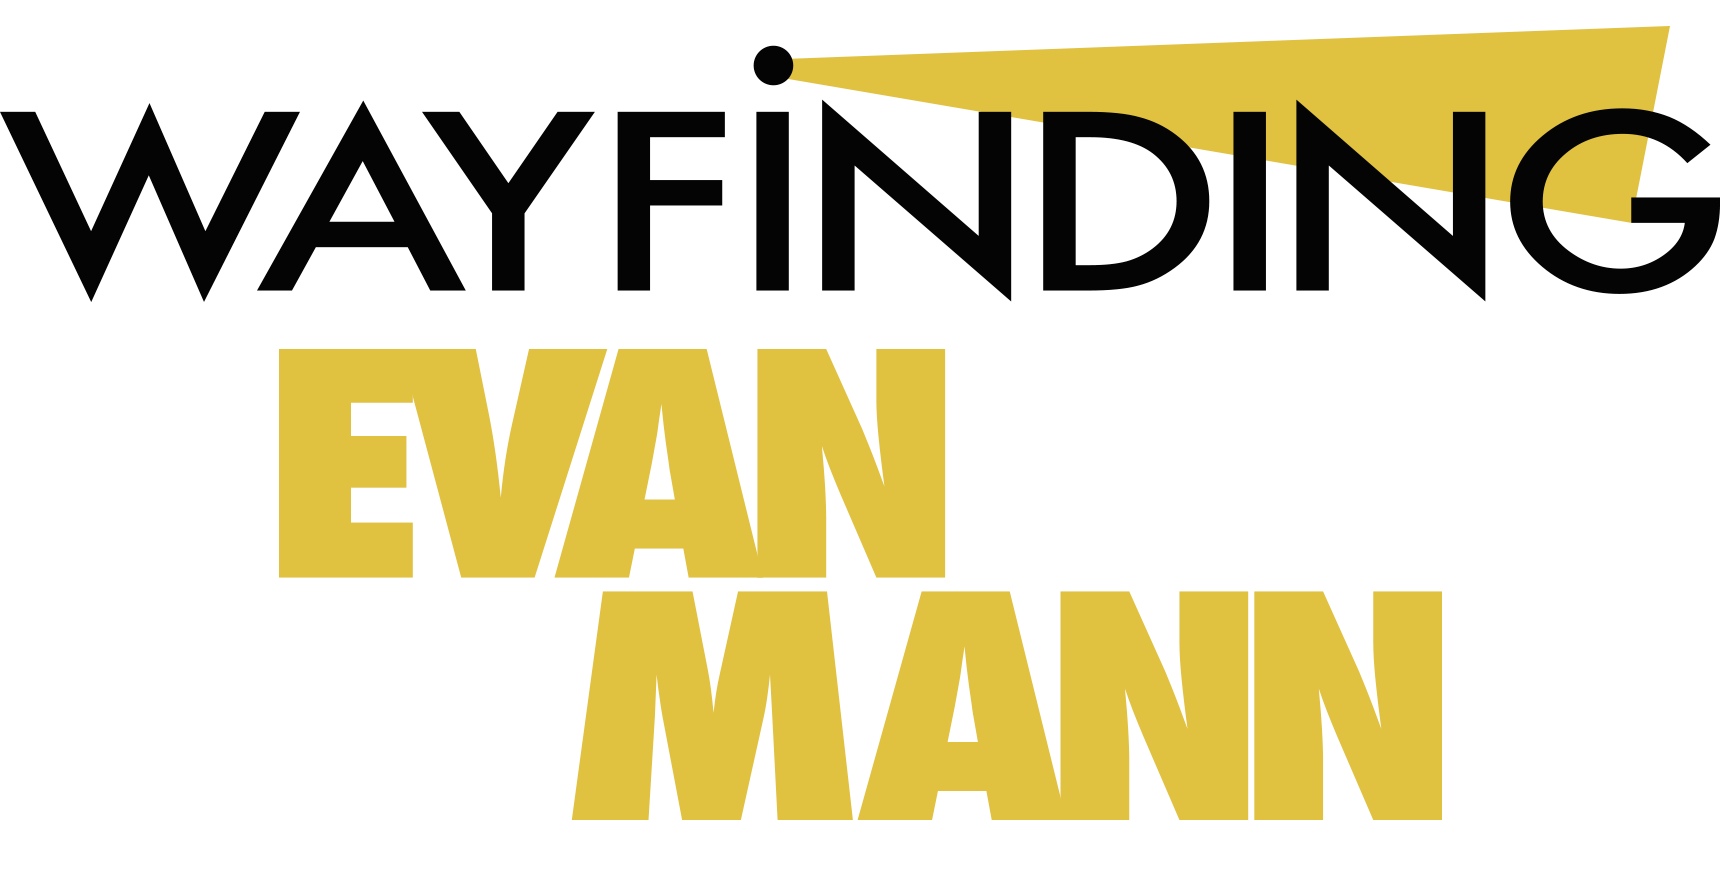 Wayfinding Evan Mann Event graphic